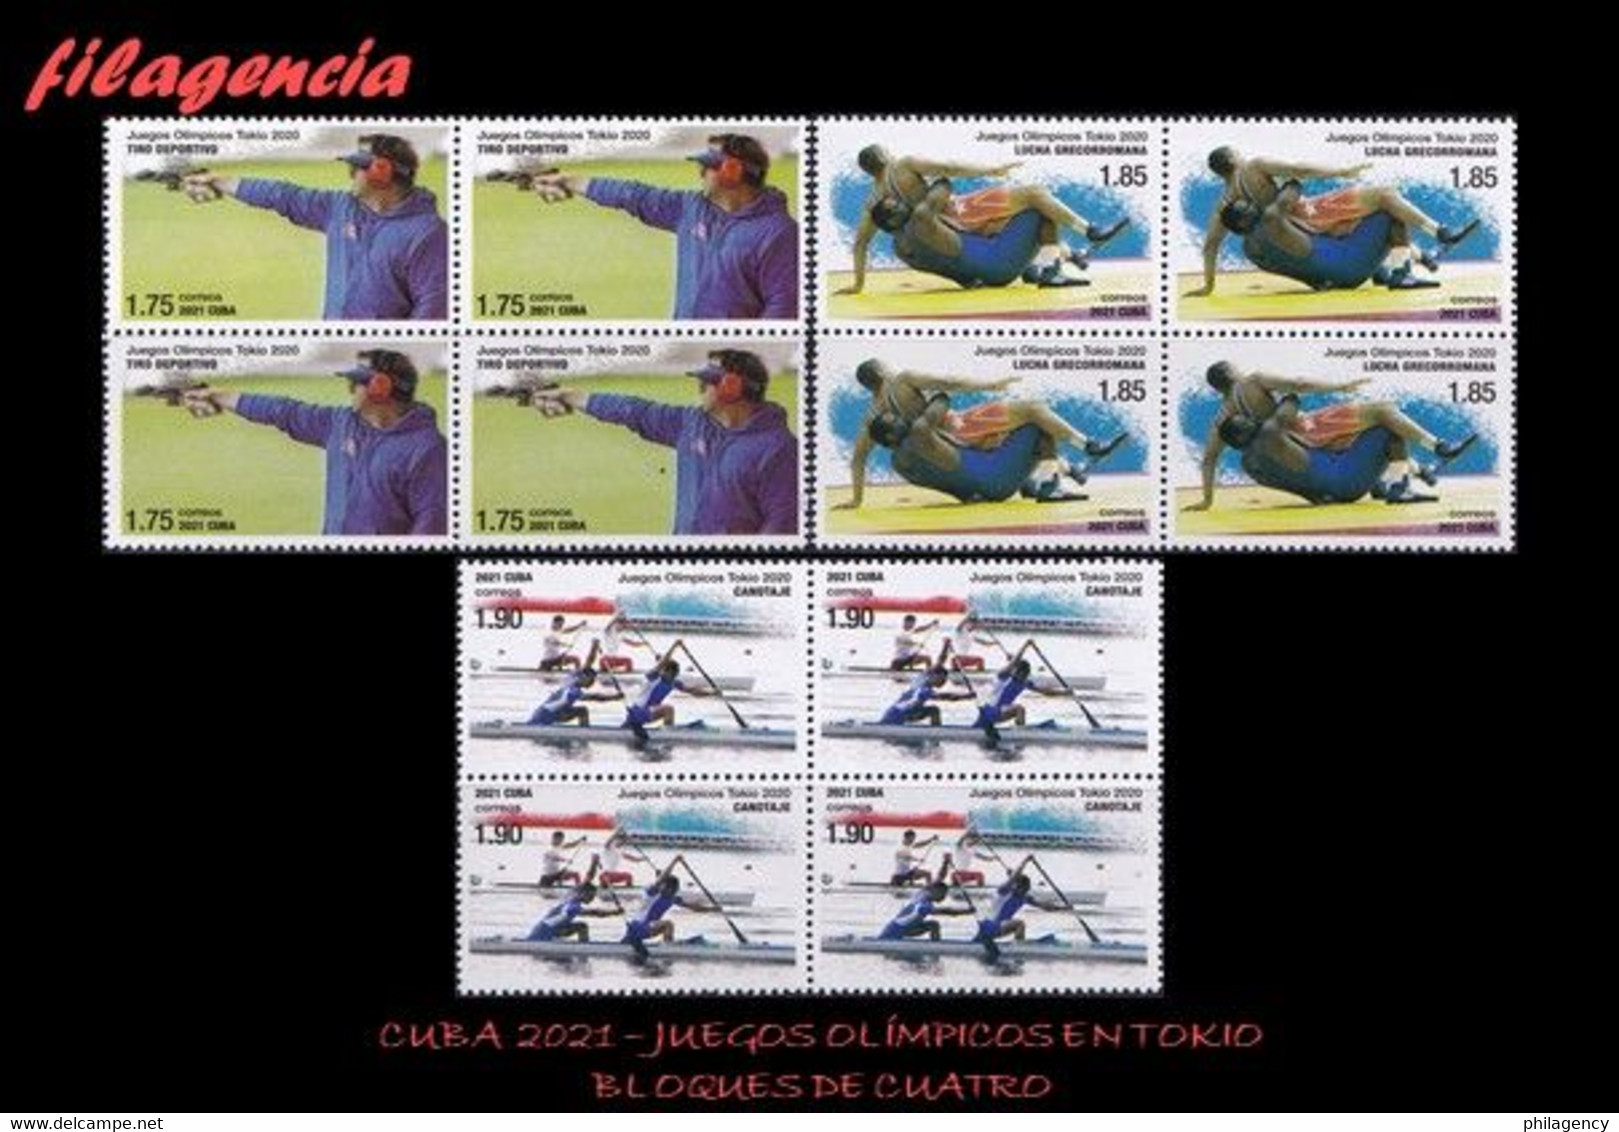 CUBA. BLOQUES DE CUATRO. 2021-11 JUEGOS OLÍMPICOS EN TOKIO - Unused Stamps